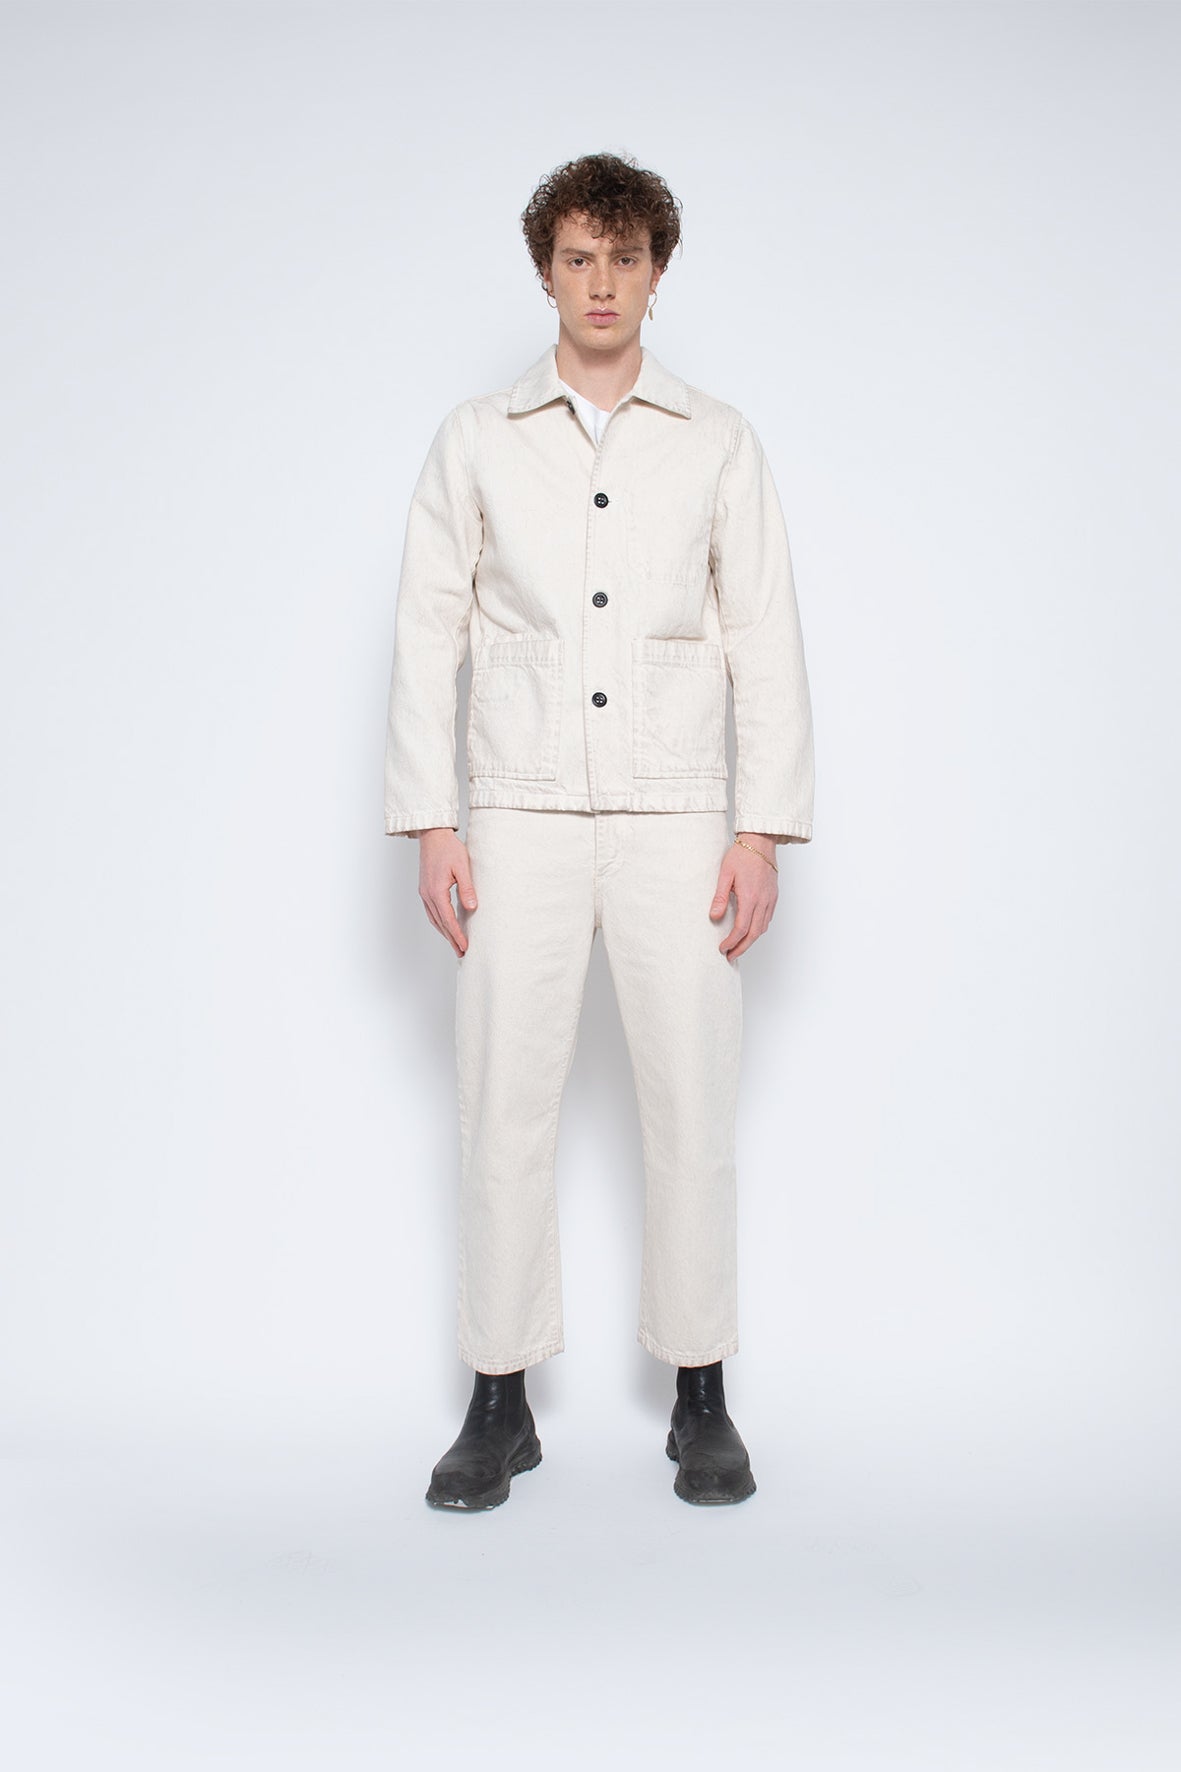 Denali shirt jacket unisex - responsible fabric